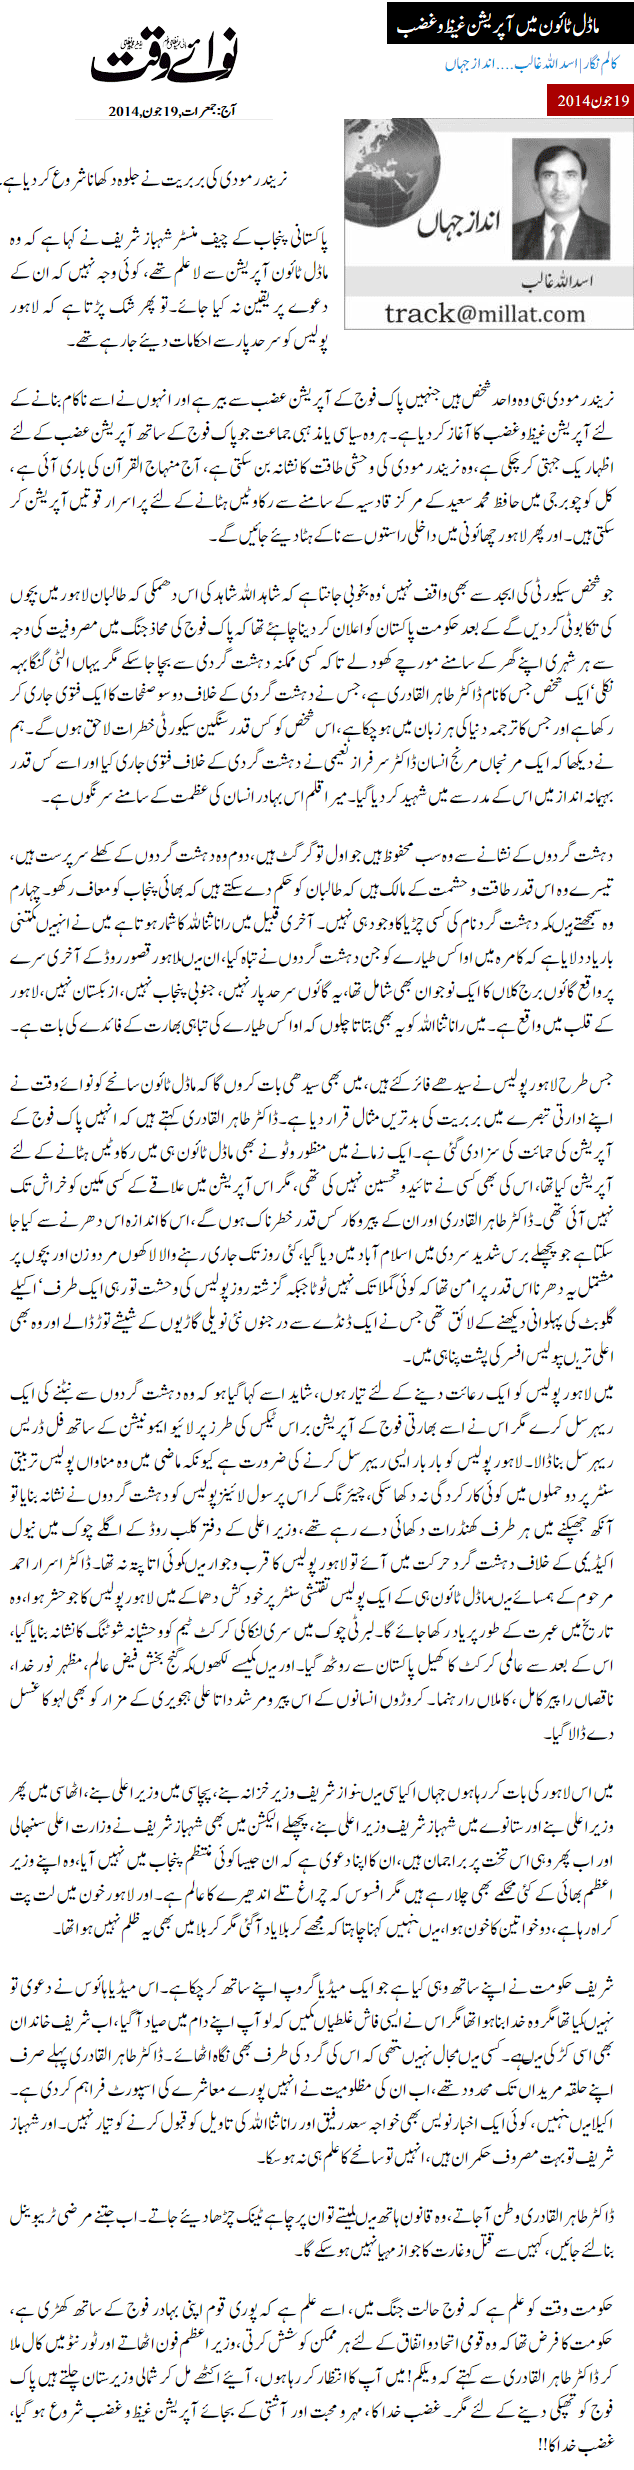 Print Media Coverage Daily Nawa-i-Waqt - Asadullah Ghalib